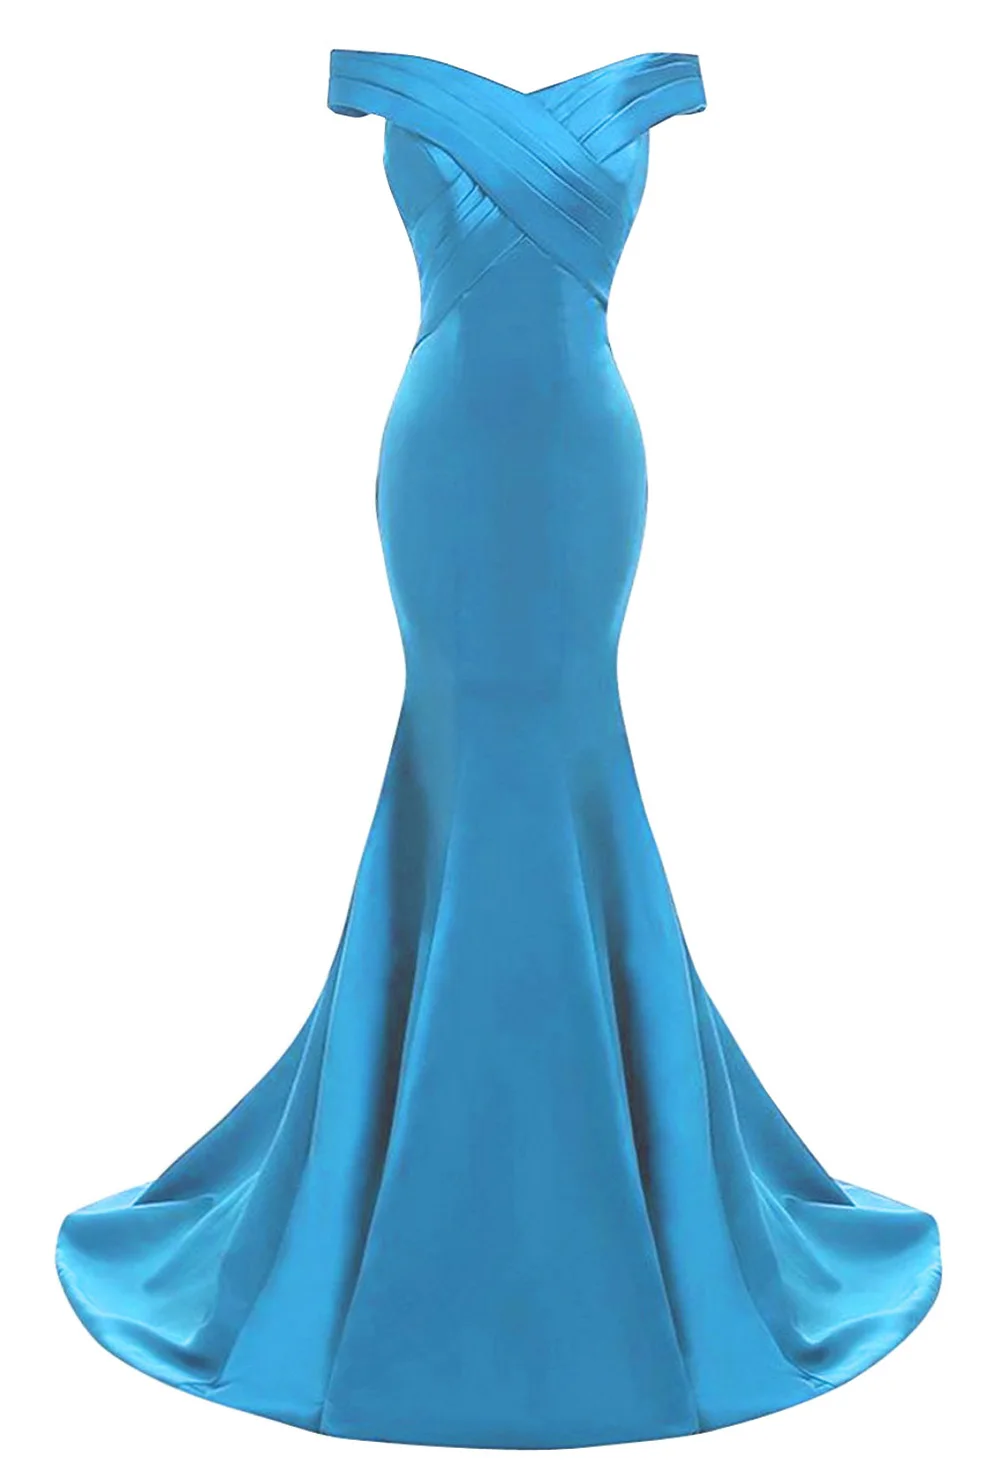 Yinyyinhs реальное изображение с открытыми плечами Вечерние платья развертки поезд Vestido De Fiesta Русалка Длинные вечерние платья на выпускной CG81 - Цвет: Blue